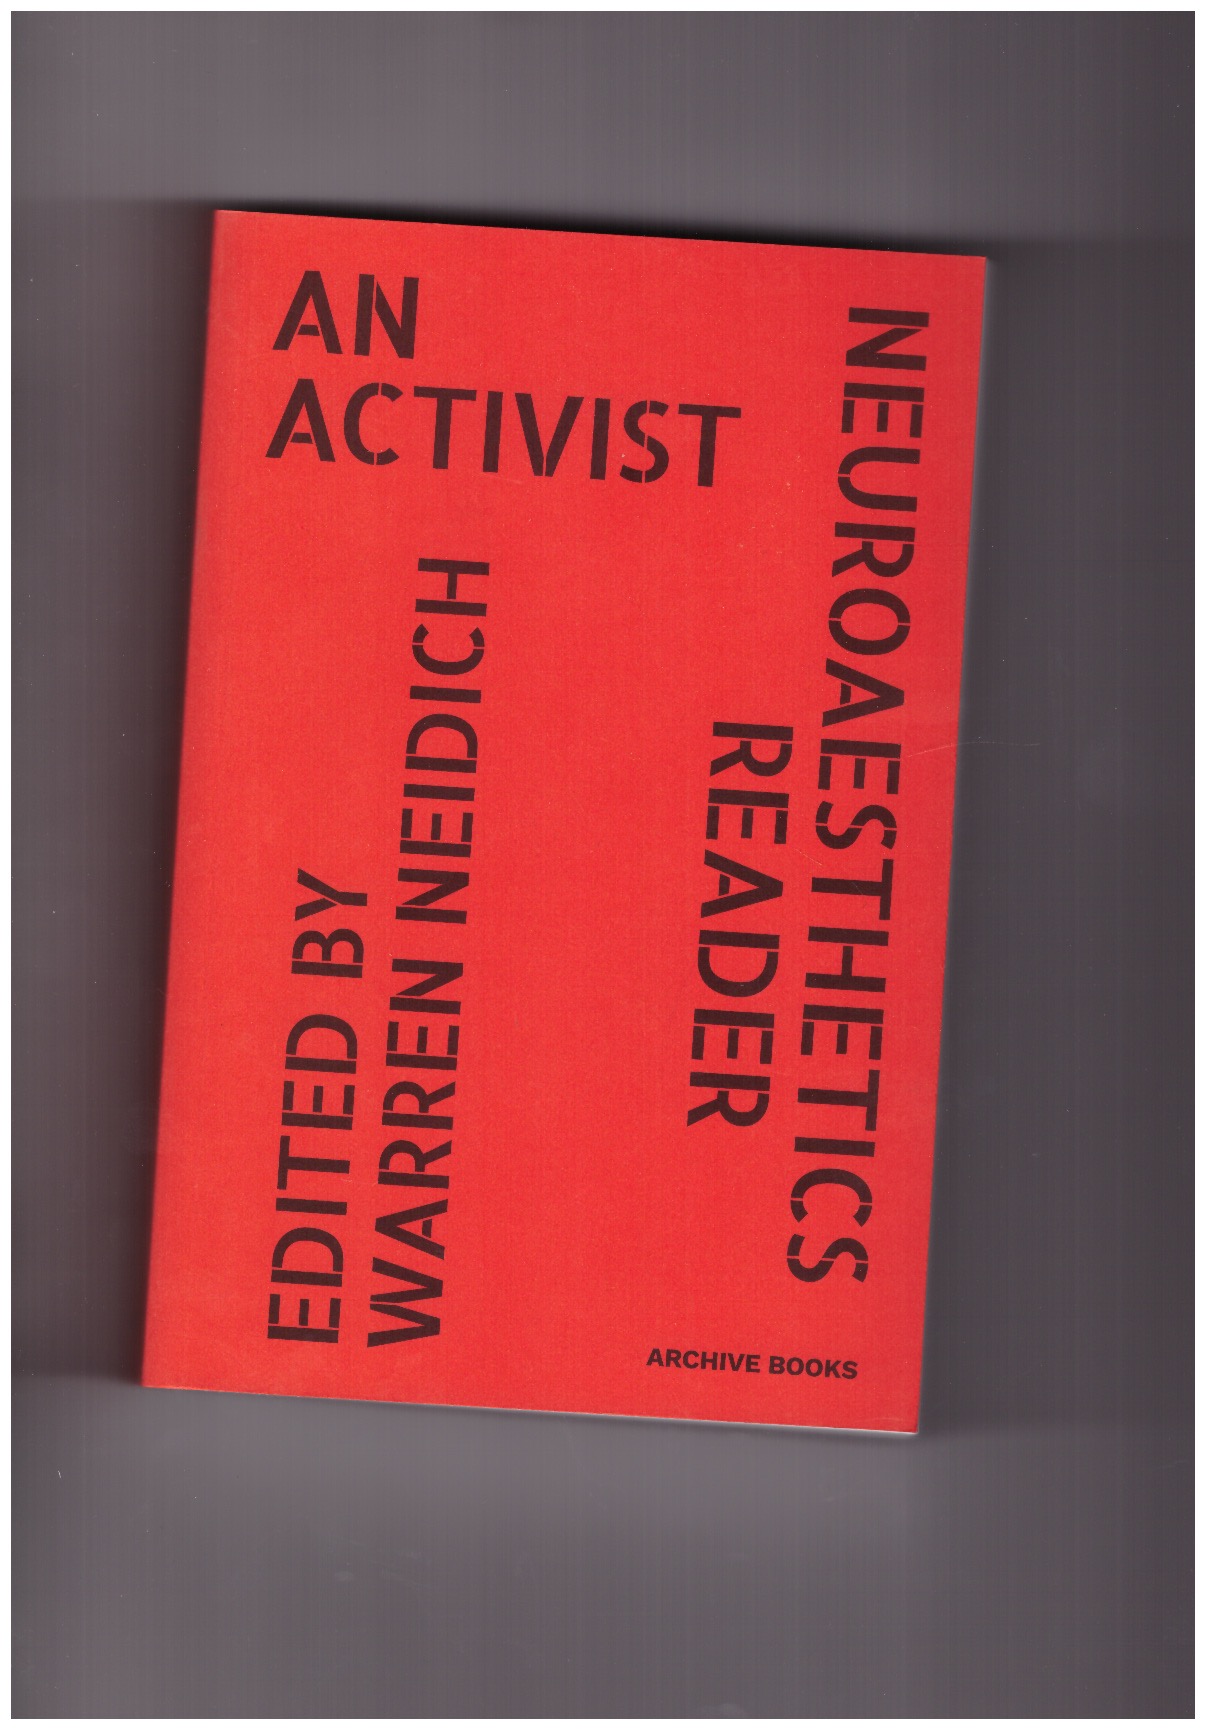 NEIDICH, Warren (ed.) - An Activist Neuroaesthetic Reader